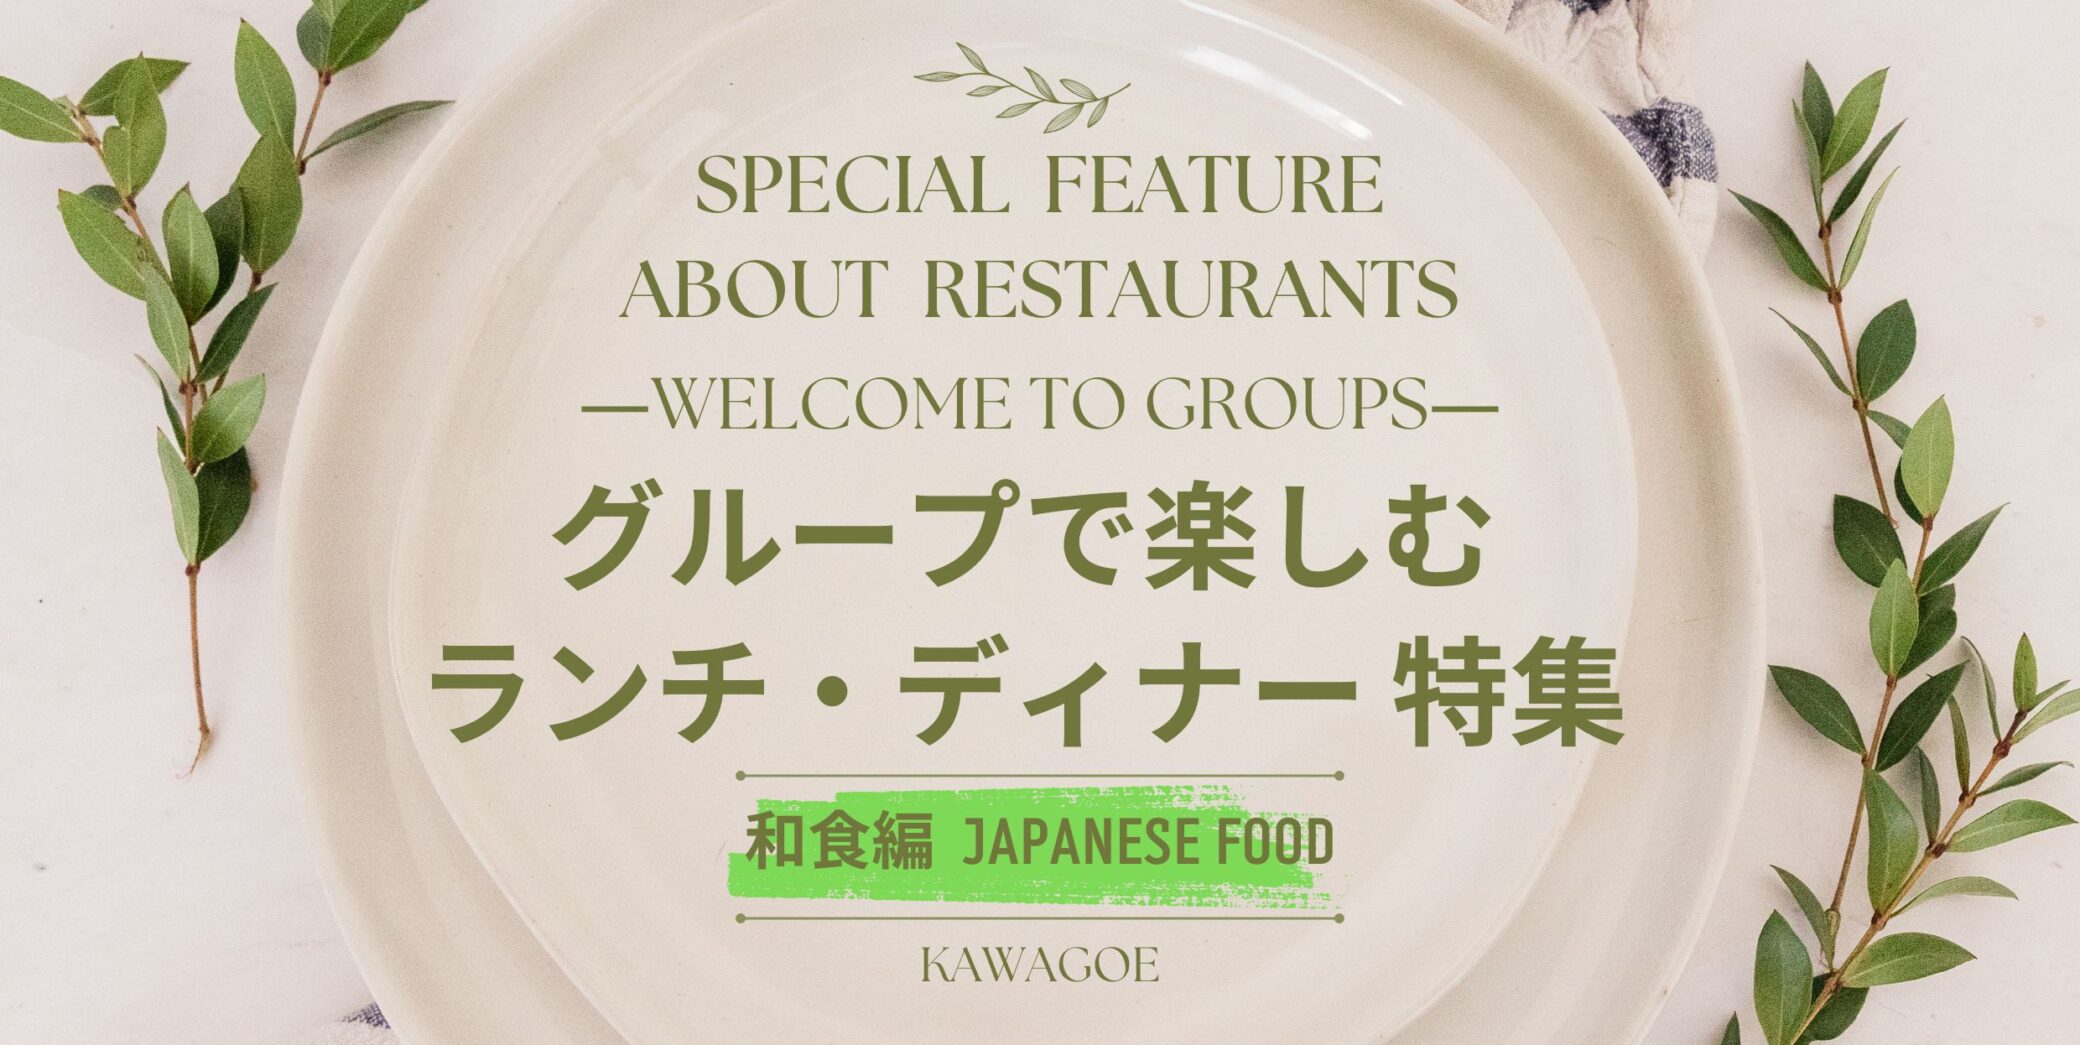 🍴 Especial almuerzo y cena para grupos - Edición comida japonesa - 🎉